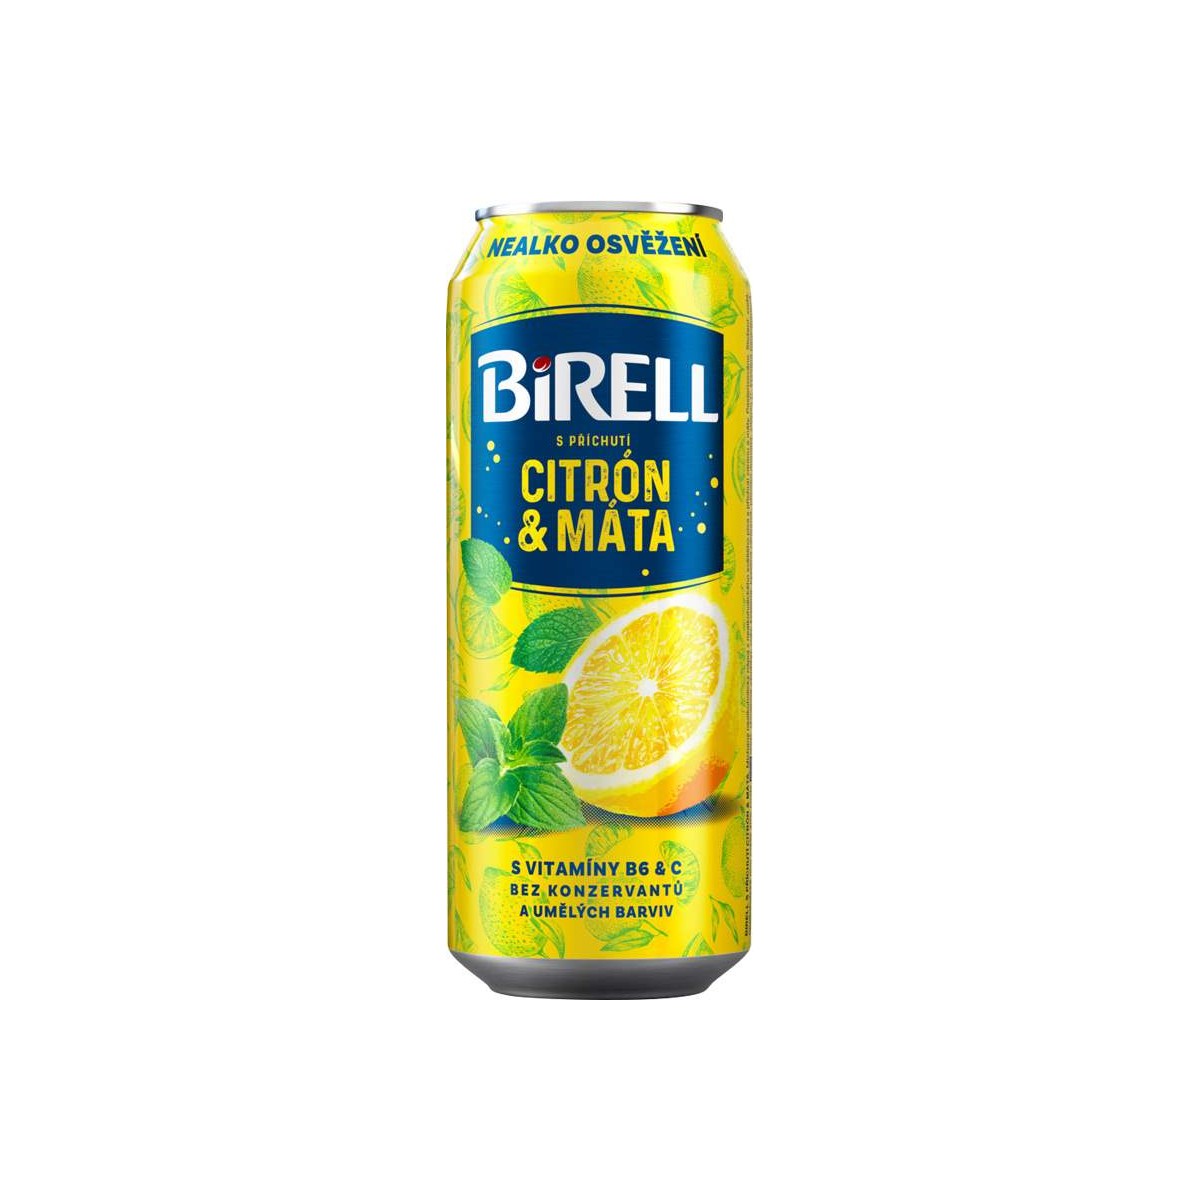 Birell Citron & máta 0,5l - plech